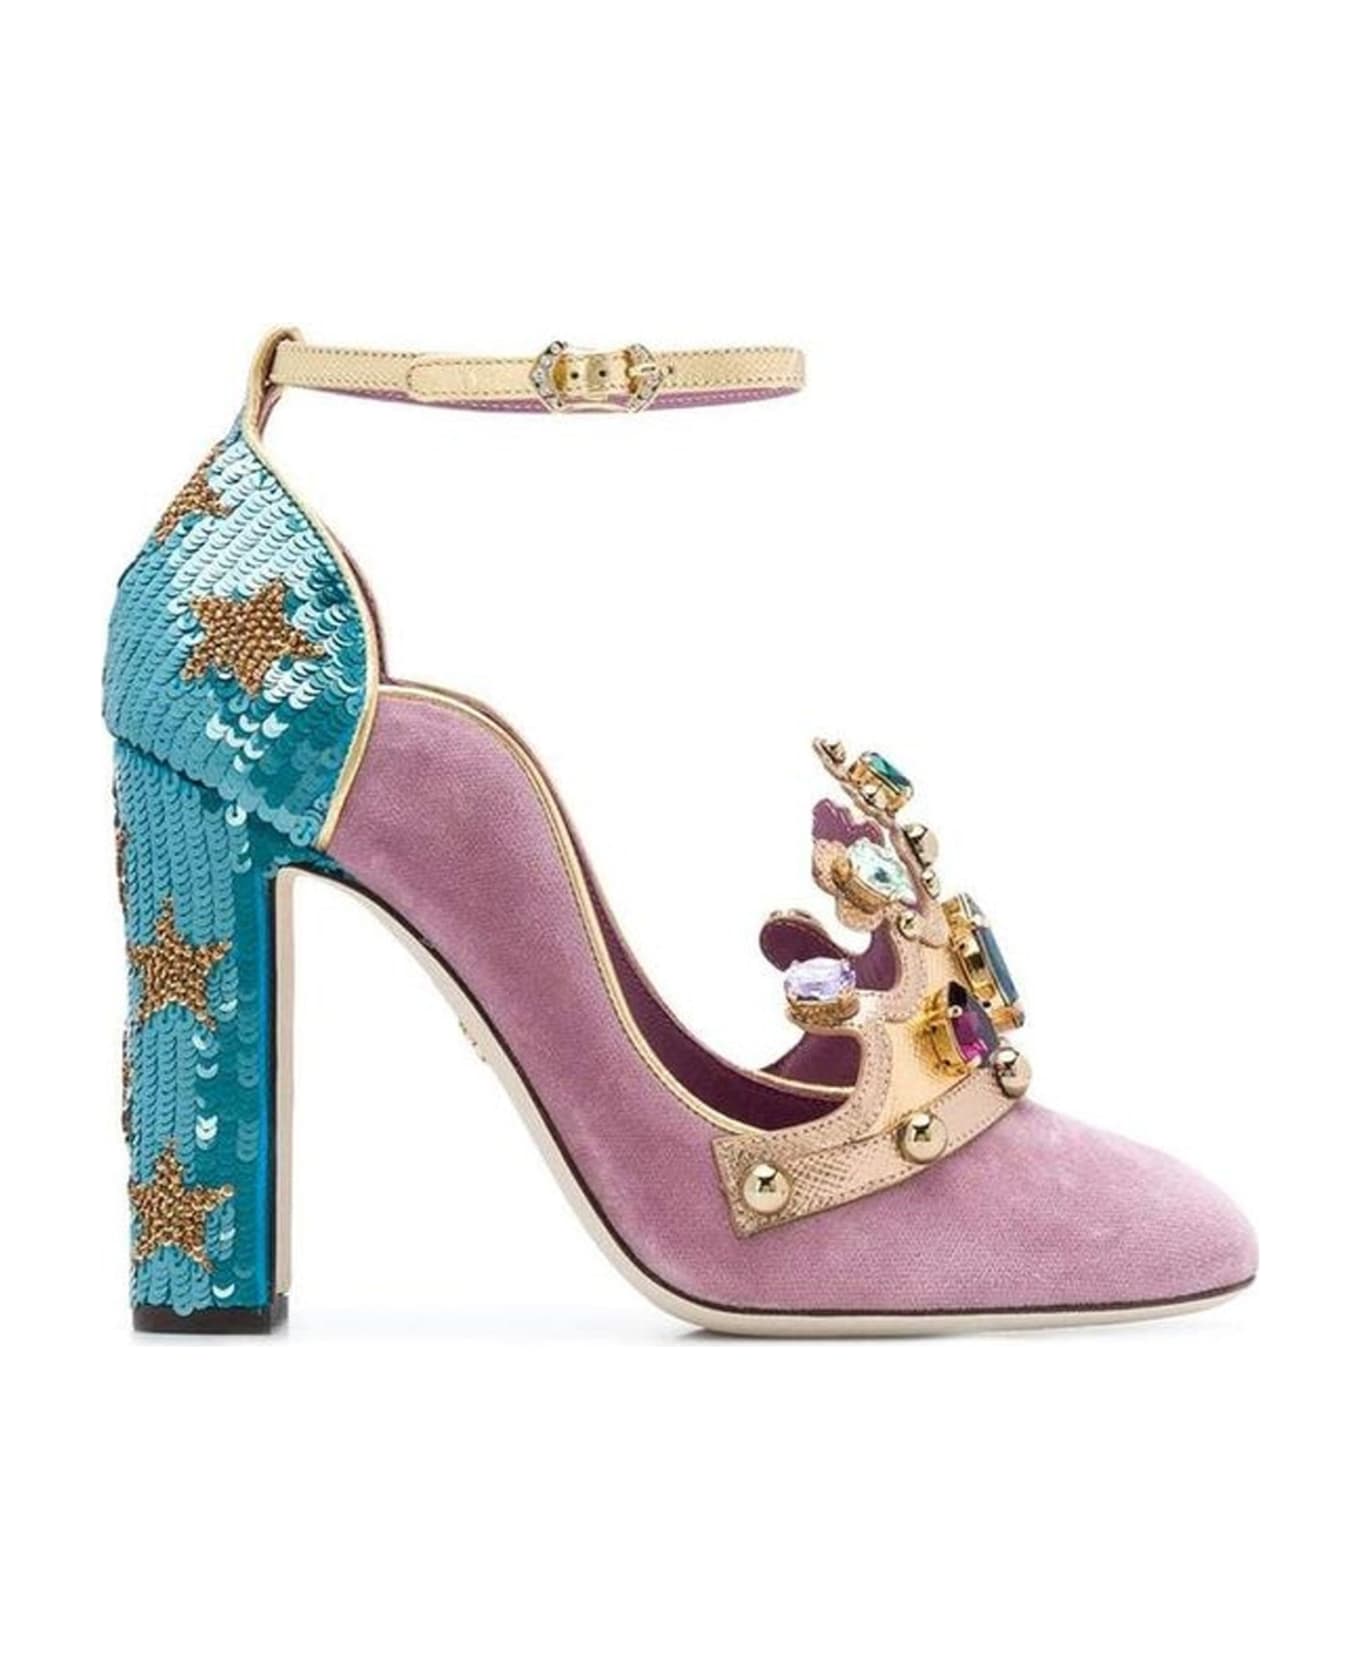 Dolce & Gabbana Suede Crown Pumps - Pink